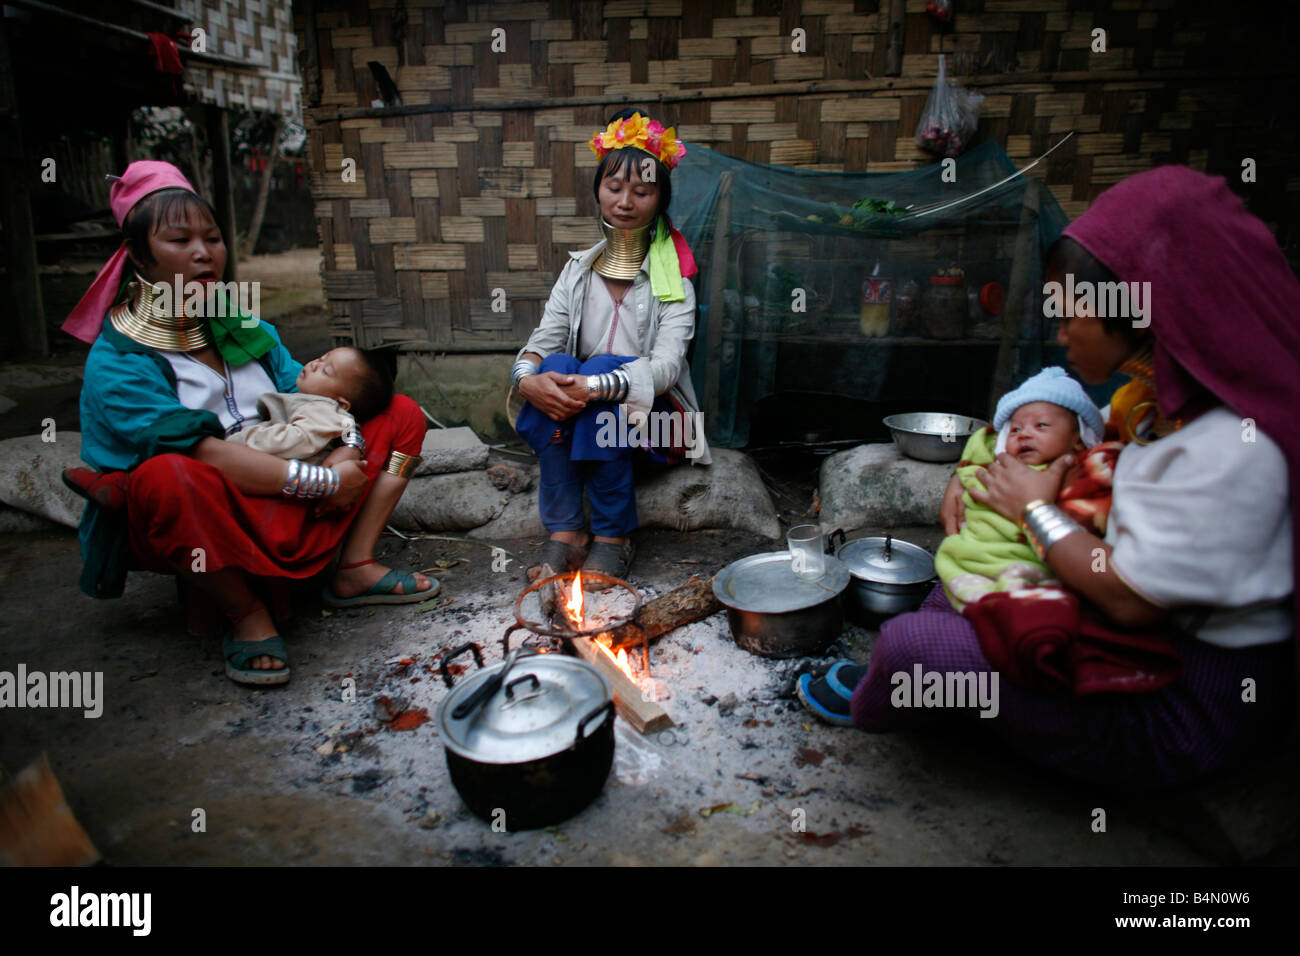 Eine Gruppe von Longneck Frauen sitzen um ein Feuer mit ihren Babys ca. 300 birmanischen Flüchtlinge in Thailand Mitglieder der indigenen Gruppe bekannt sind als die Longnecks, die größte der drei Dörfer wo live Longnecks Nai Soi genannt befindet sich in der Nähe von Mae Hong Son Stadt longnecks, tragen Metallringe auf den Hals, die das Schlüsselbein nach unten drücken und verlängern dem Hals, sie sind, eine touristische Attraktion besuchen Touristen Nai Soi um die Longnecks fotografieren und kaufen Sie ihr Kunsthandwerk, die die Dörfer von Menschenrechtsorganisationen als menschliche Zoos kritisiert werden Stockfoto